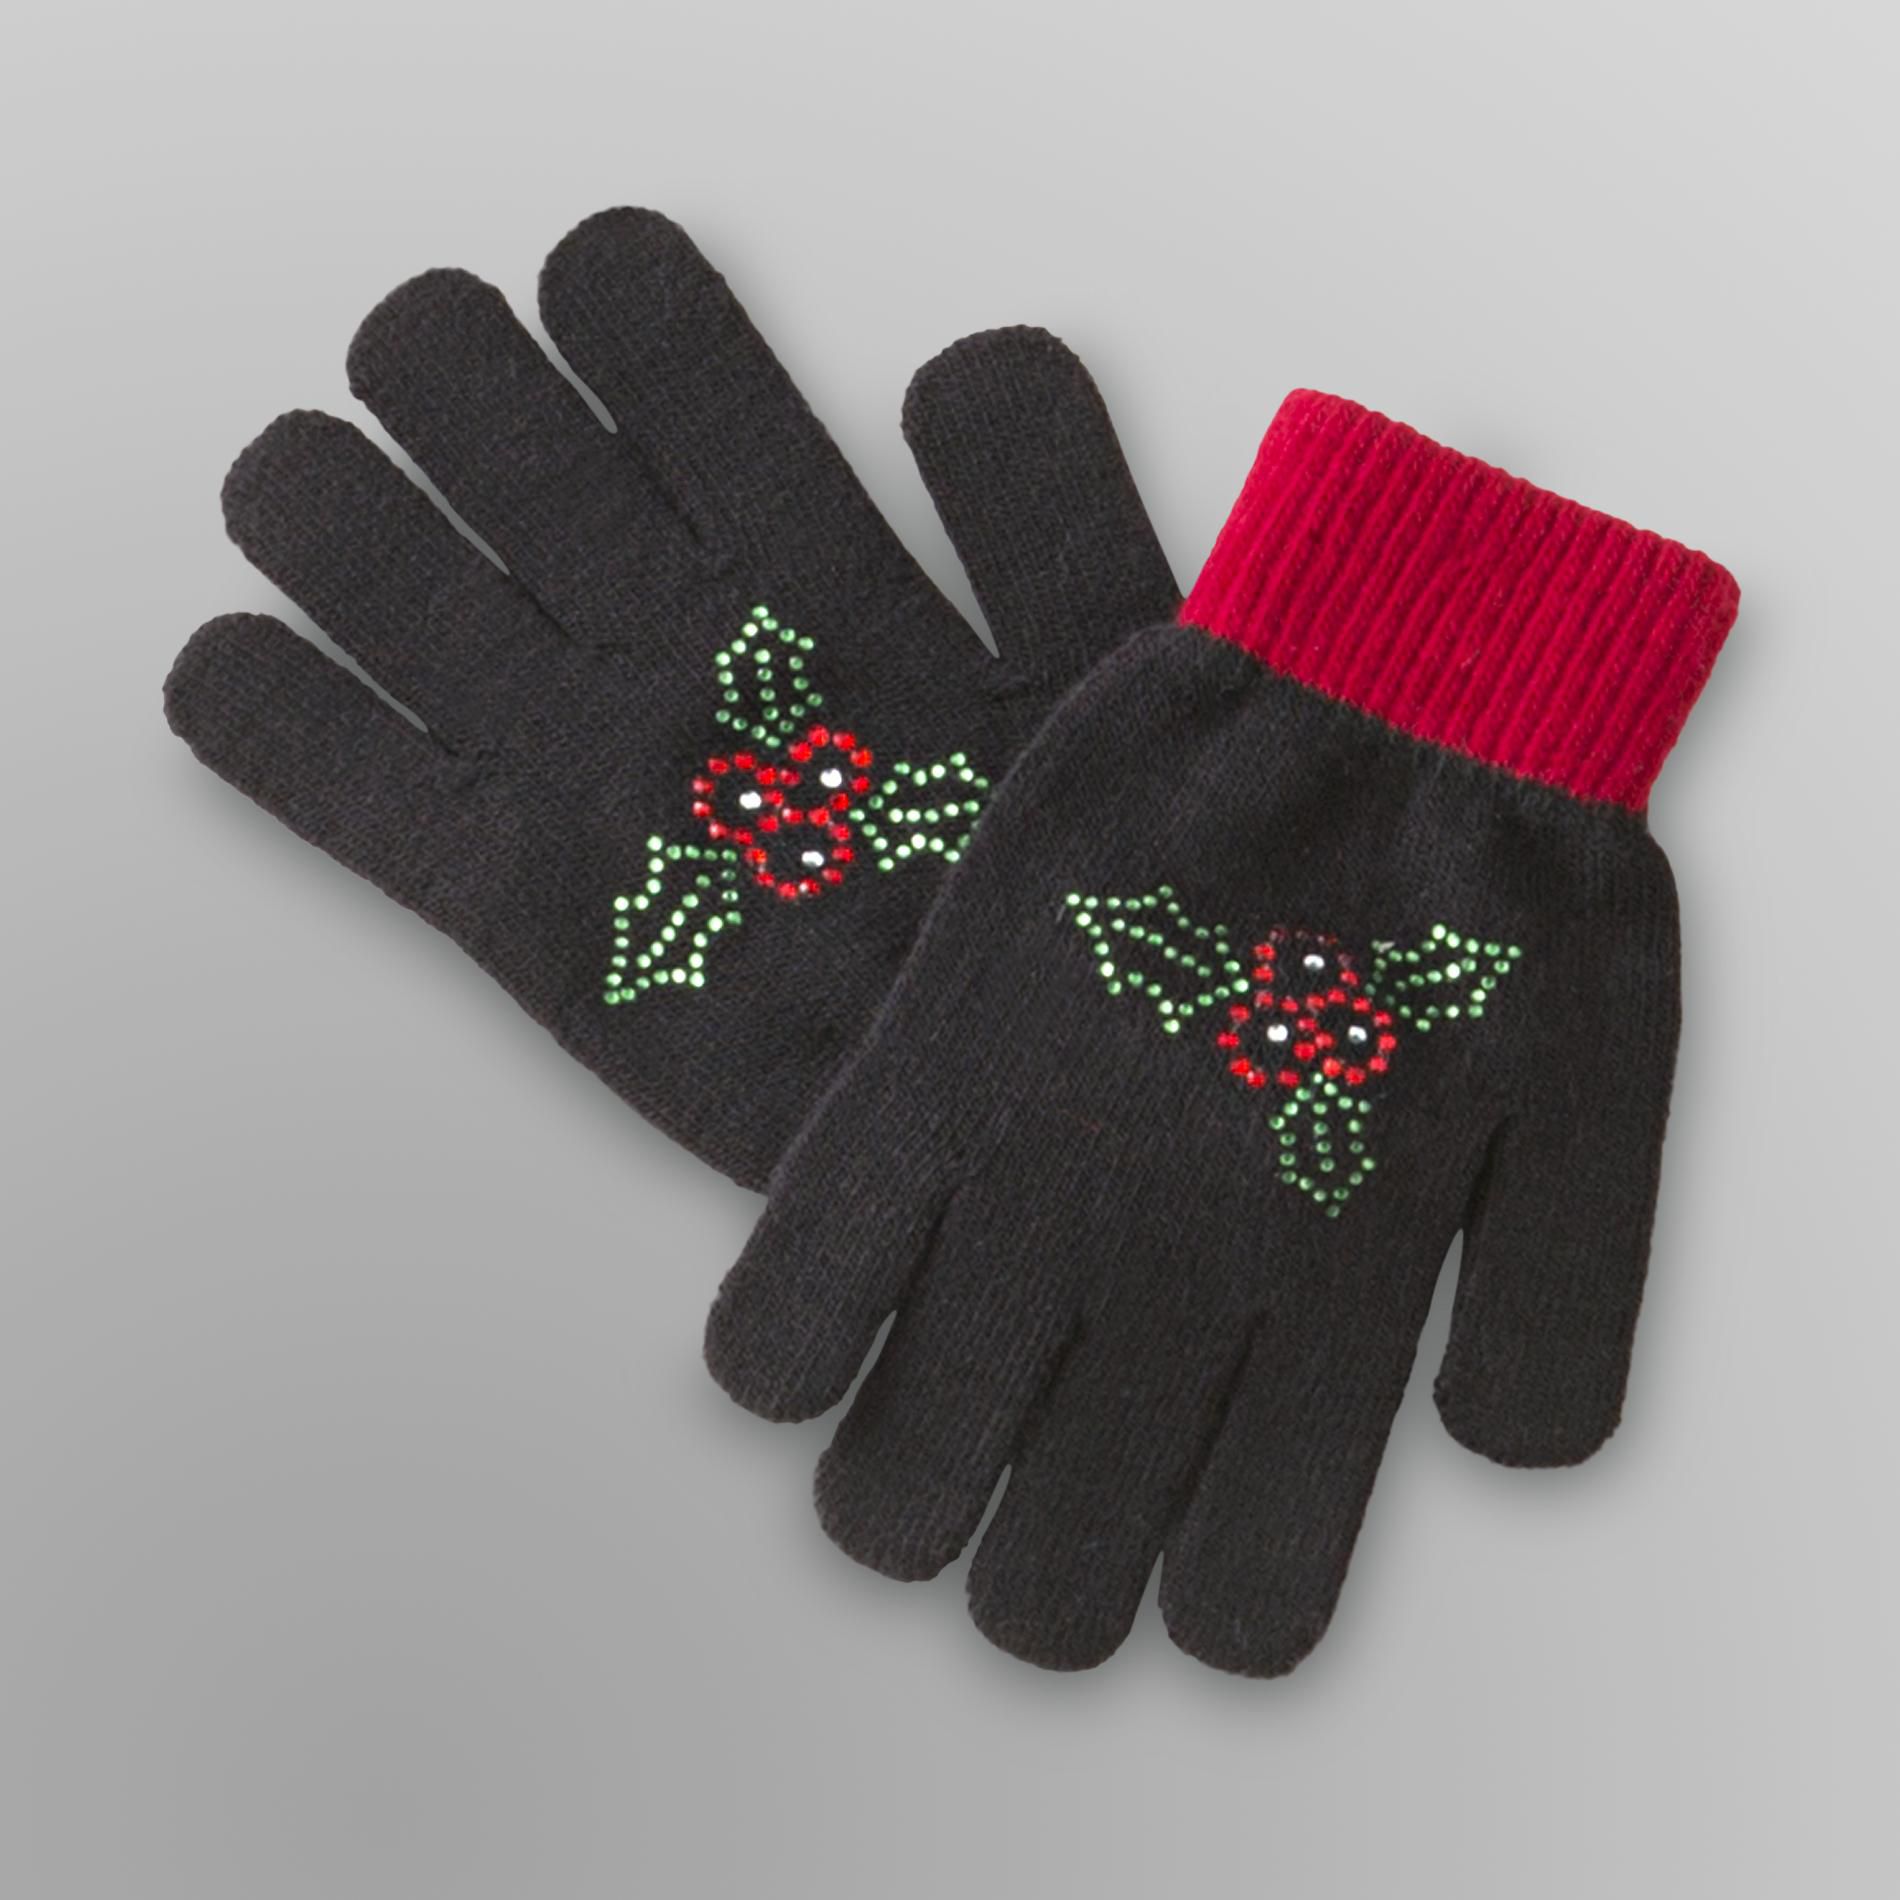 Joe Boxer Women's Stretch Knit Gloves - Mistletoe